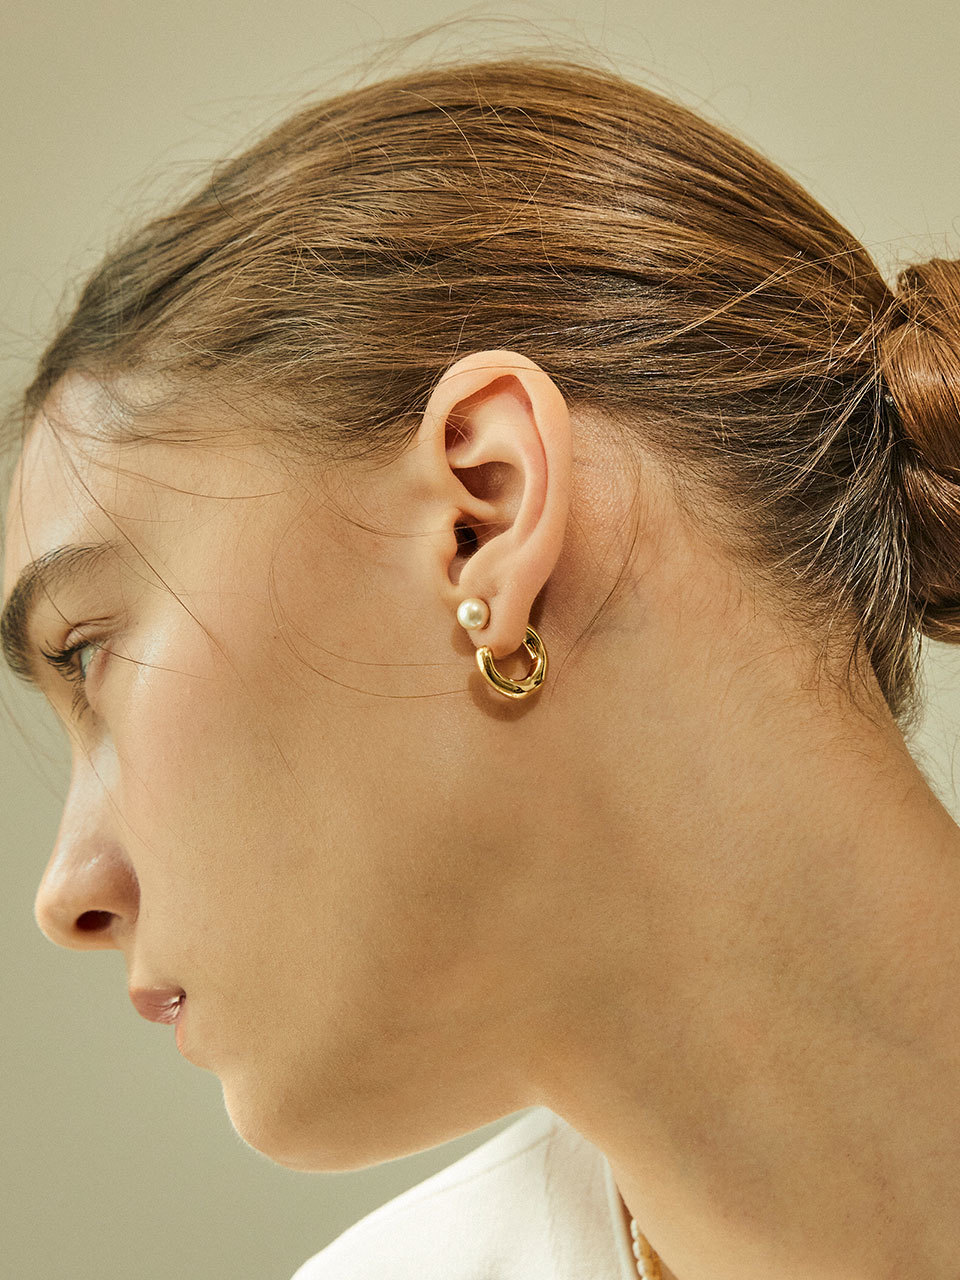 Melting Pearl Ring Earrings Gold